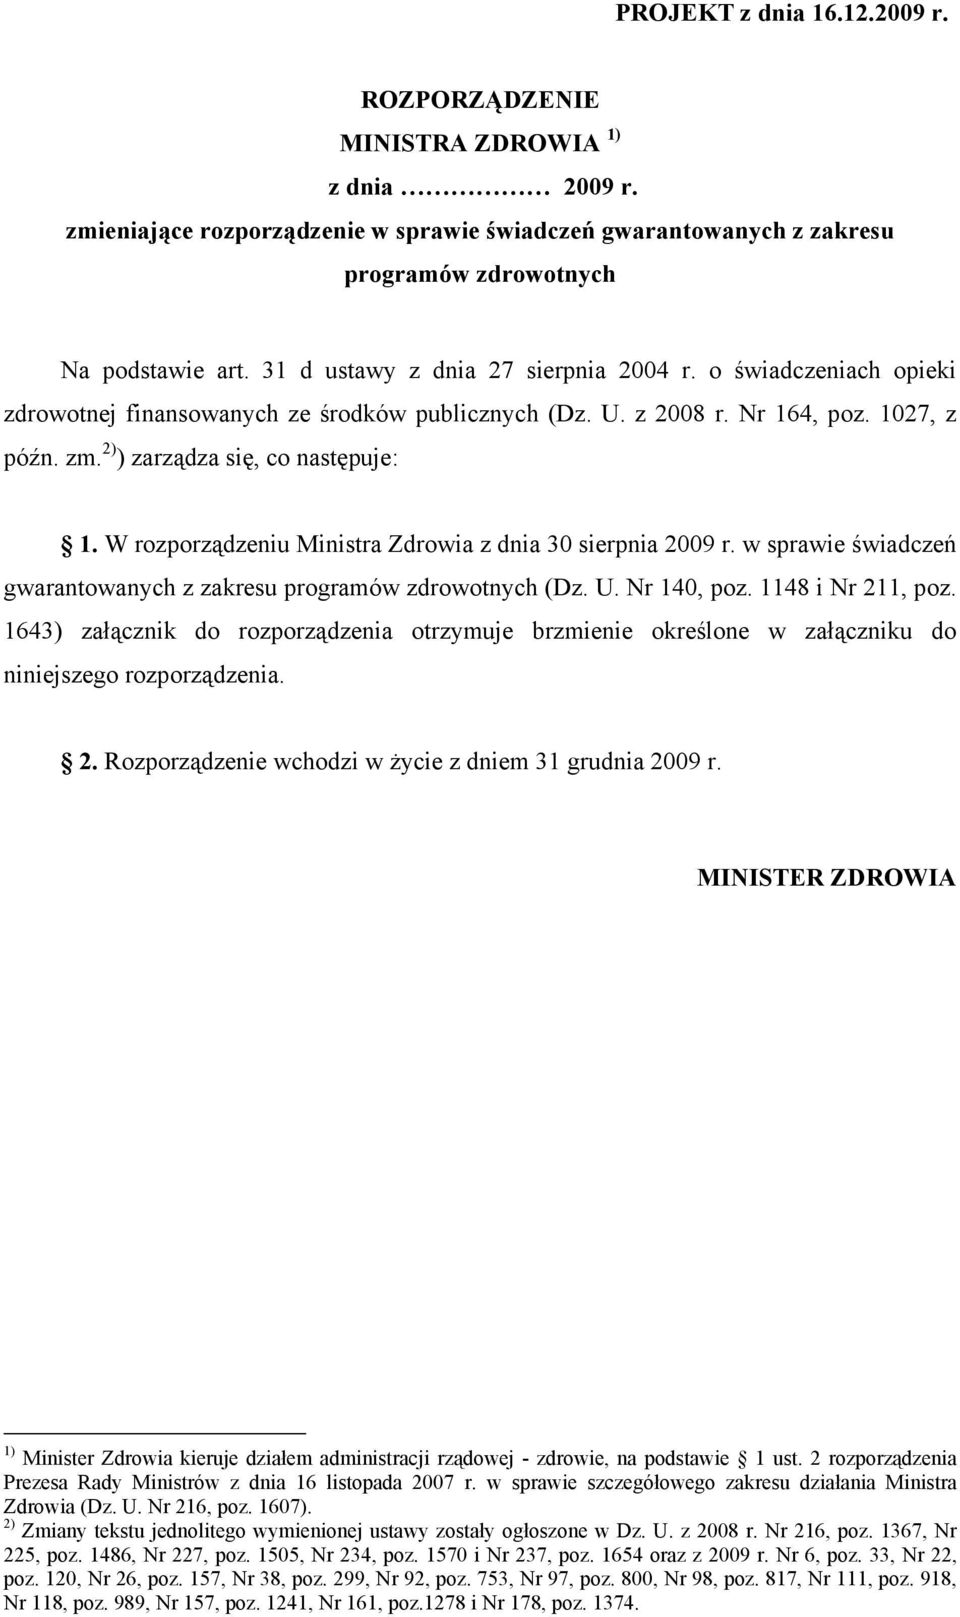 W rozporządzeniu Ministra Zdrowia z dnia 30 sierpnia 2009 r. w sprawie świadczeń gwarantowanych z zakresu programów zdrowotnych (Dz. U. Nr 140, poz. 1148 i Nr 211, poz.